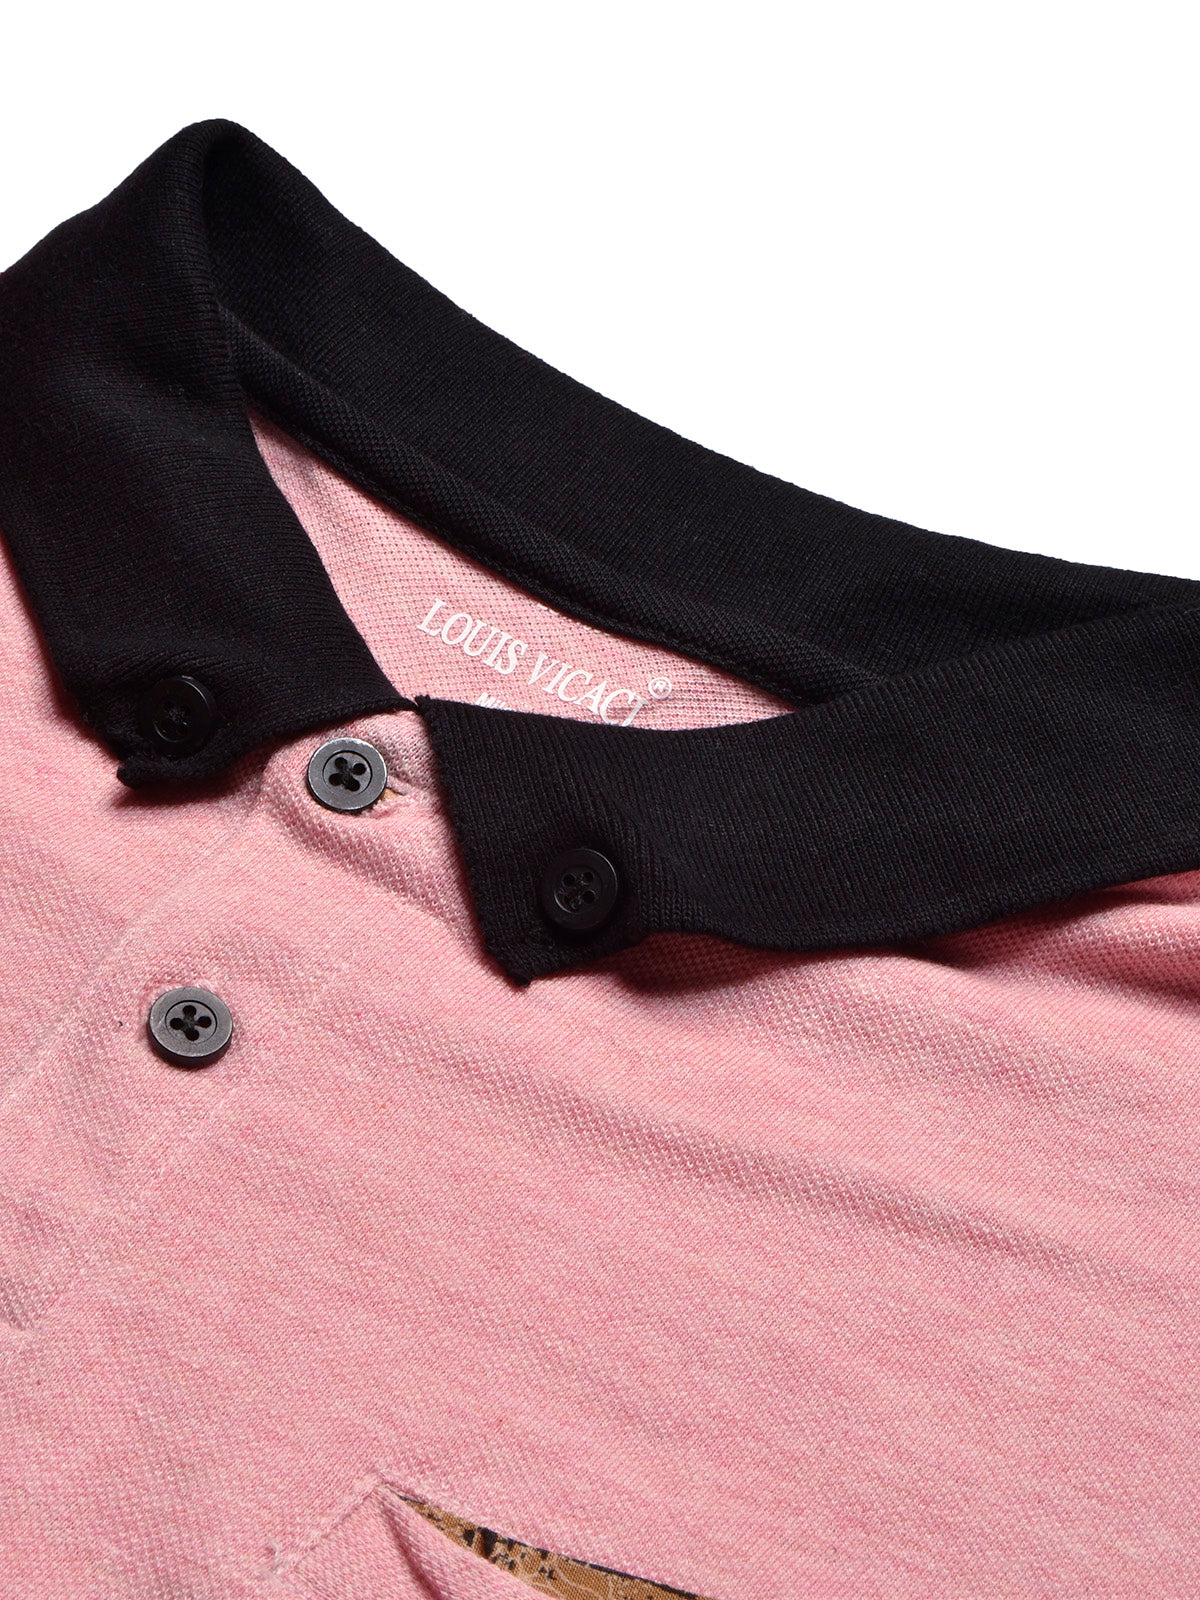 LV Summer Polo Shirt For Men-Pink Melange with Black-BE732/BR12983